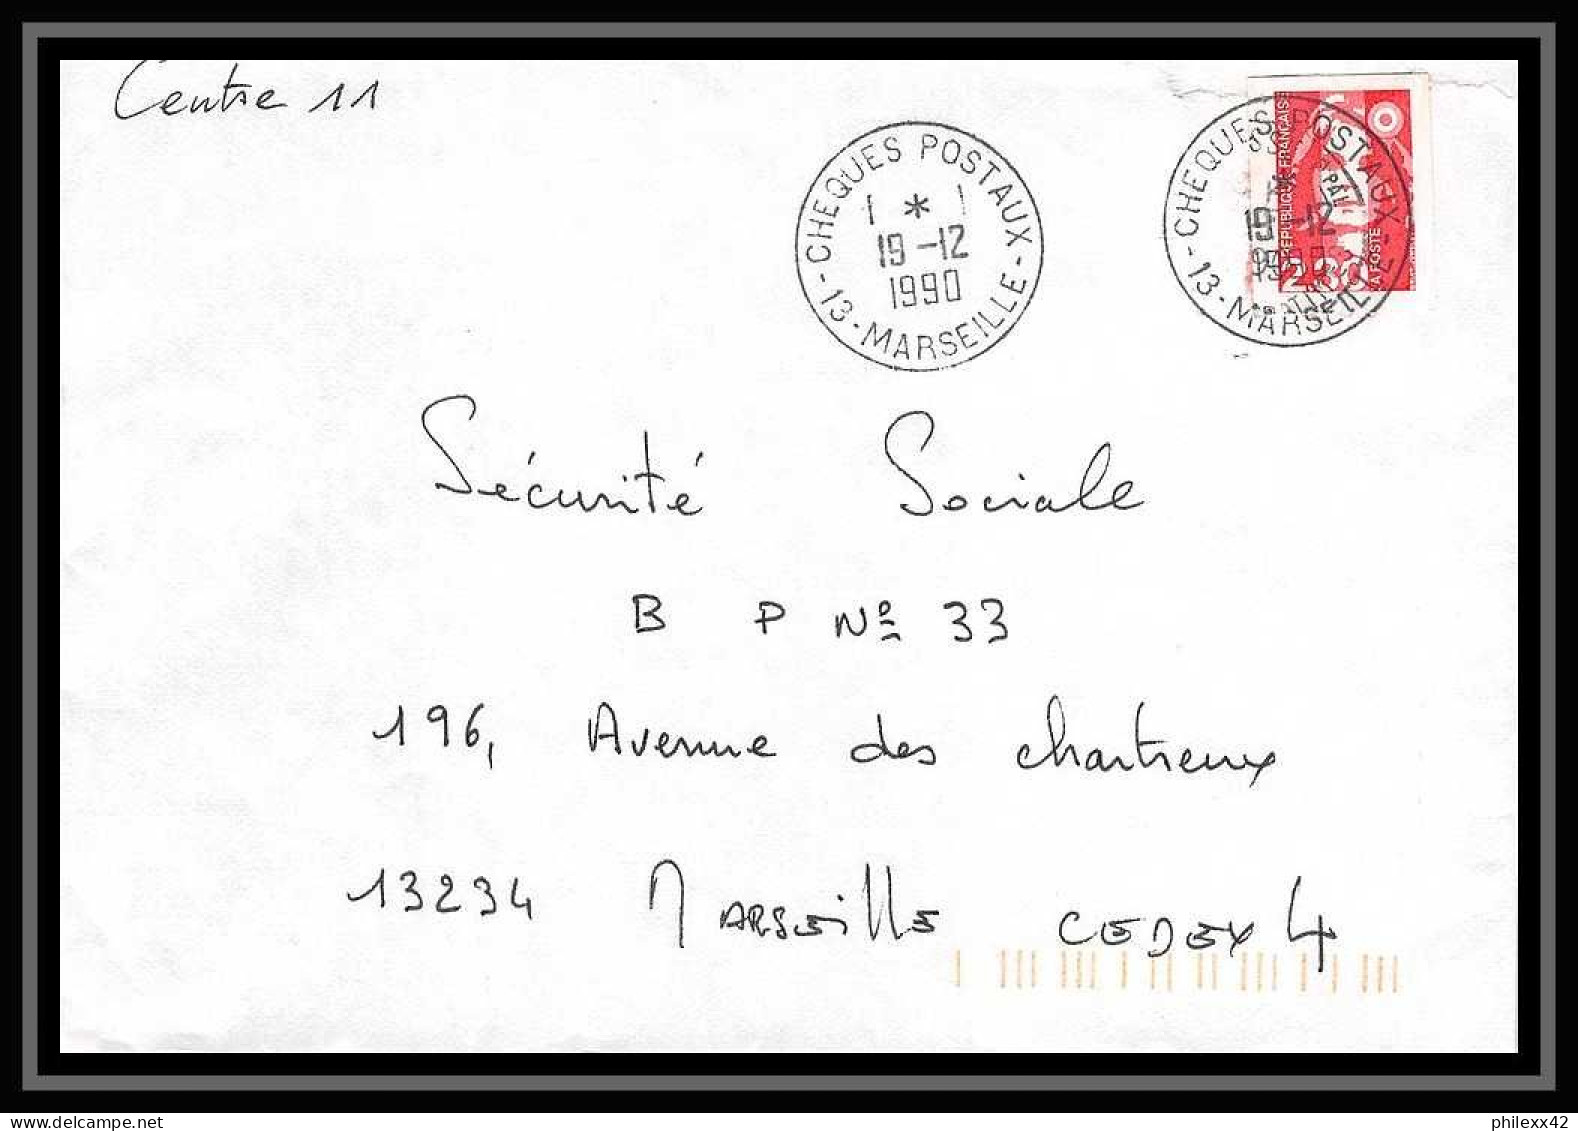 109882 lot de 15 lettres + divers Bouches du rhone Marseille Chèques postaux